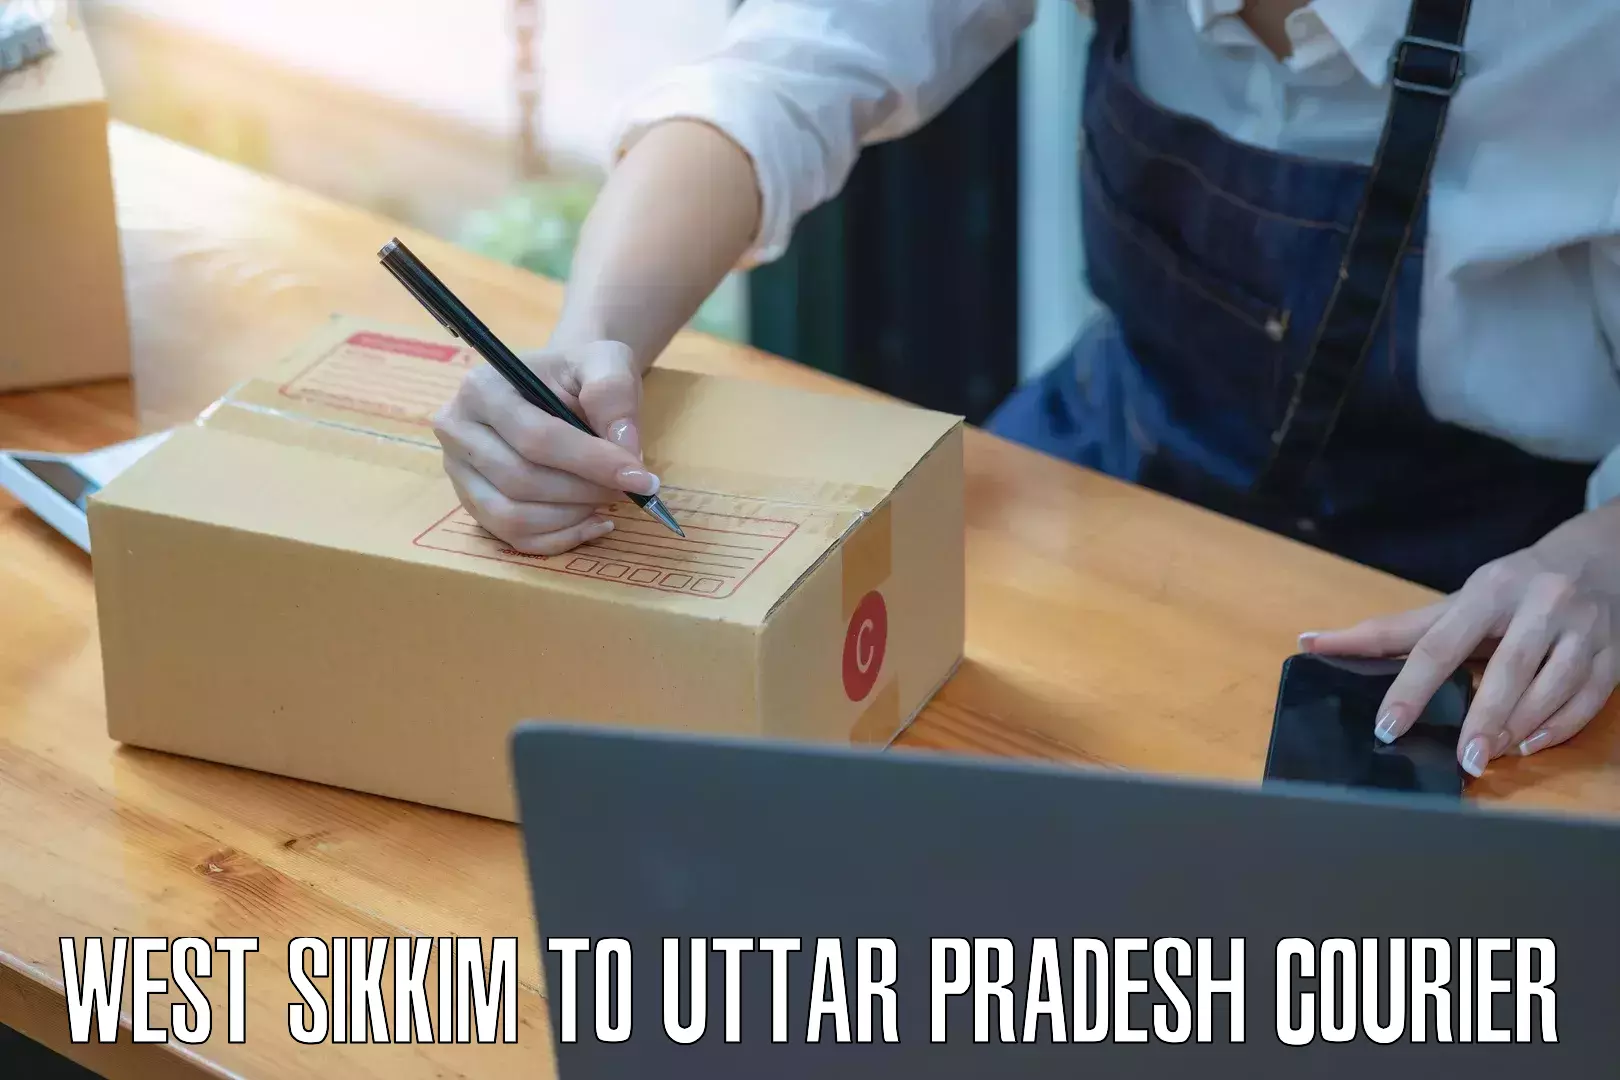 24-hour courier service West Sikkim to Uttar Pradesh